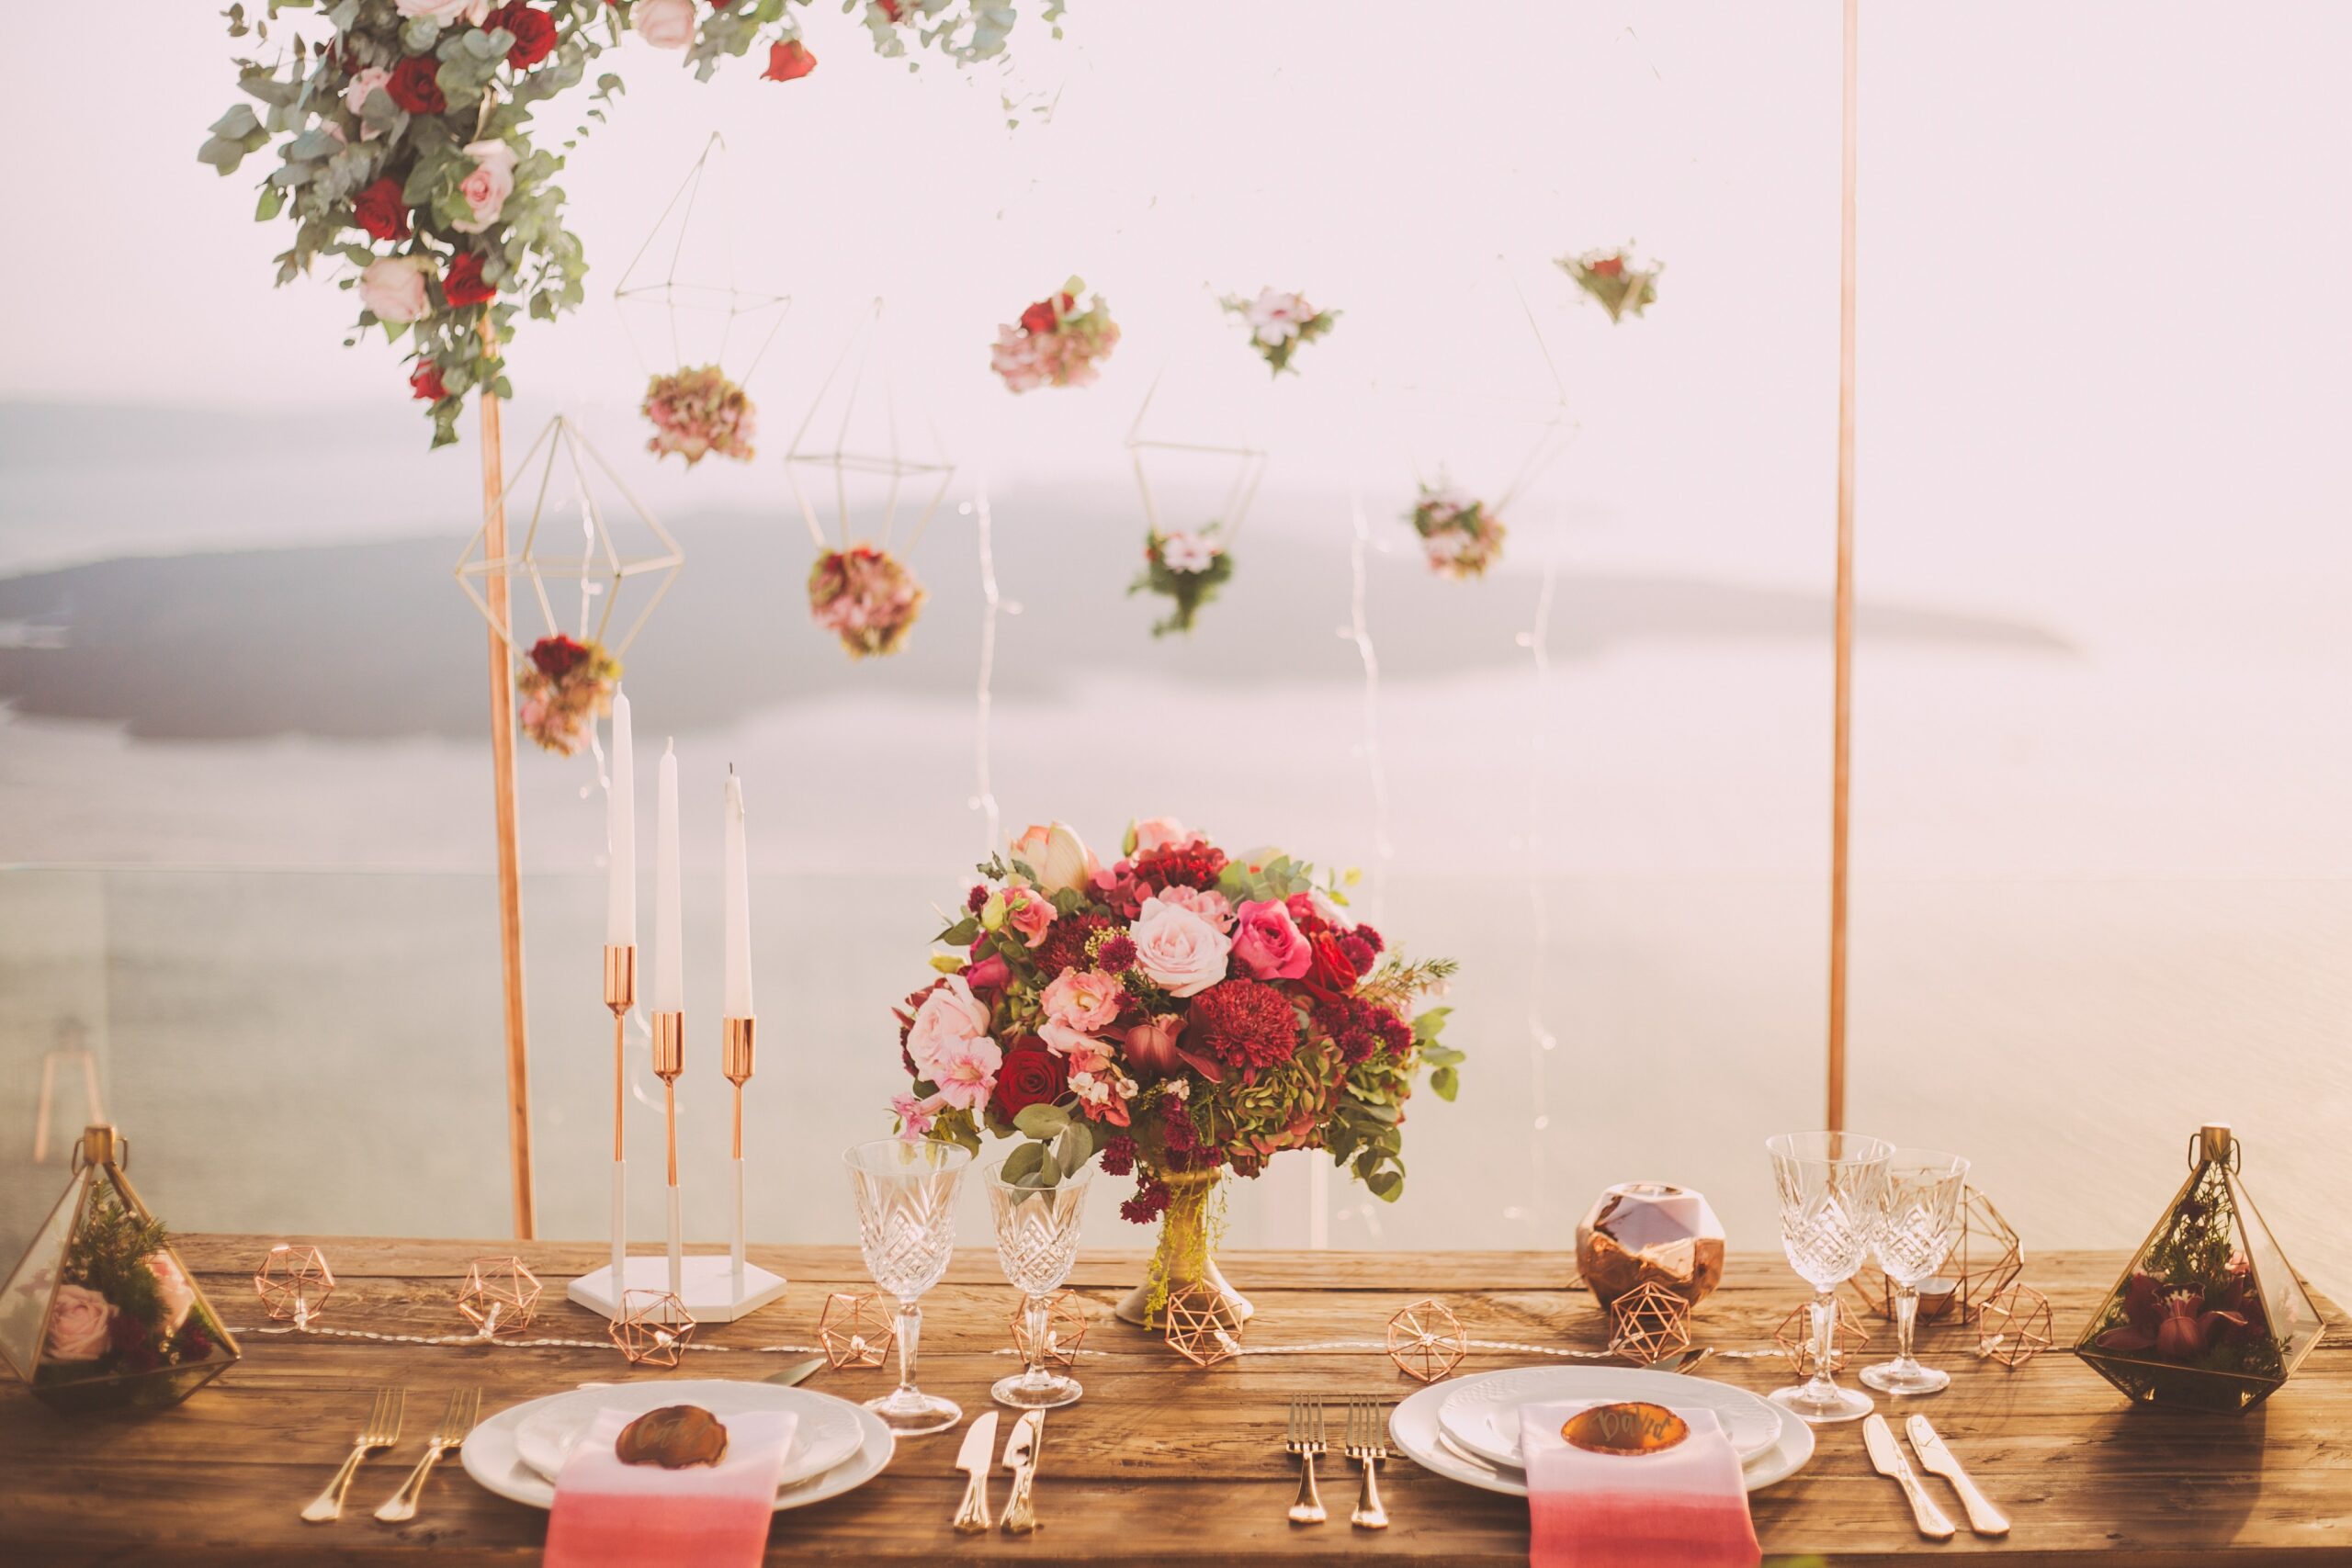 מוכרת פרחים מוכשרת בעיצוב מרכז עוצר נשימה לקבלת פנים בחתונה